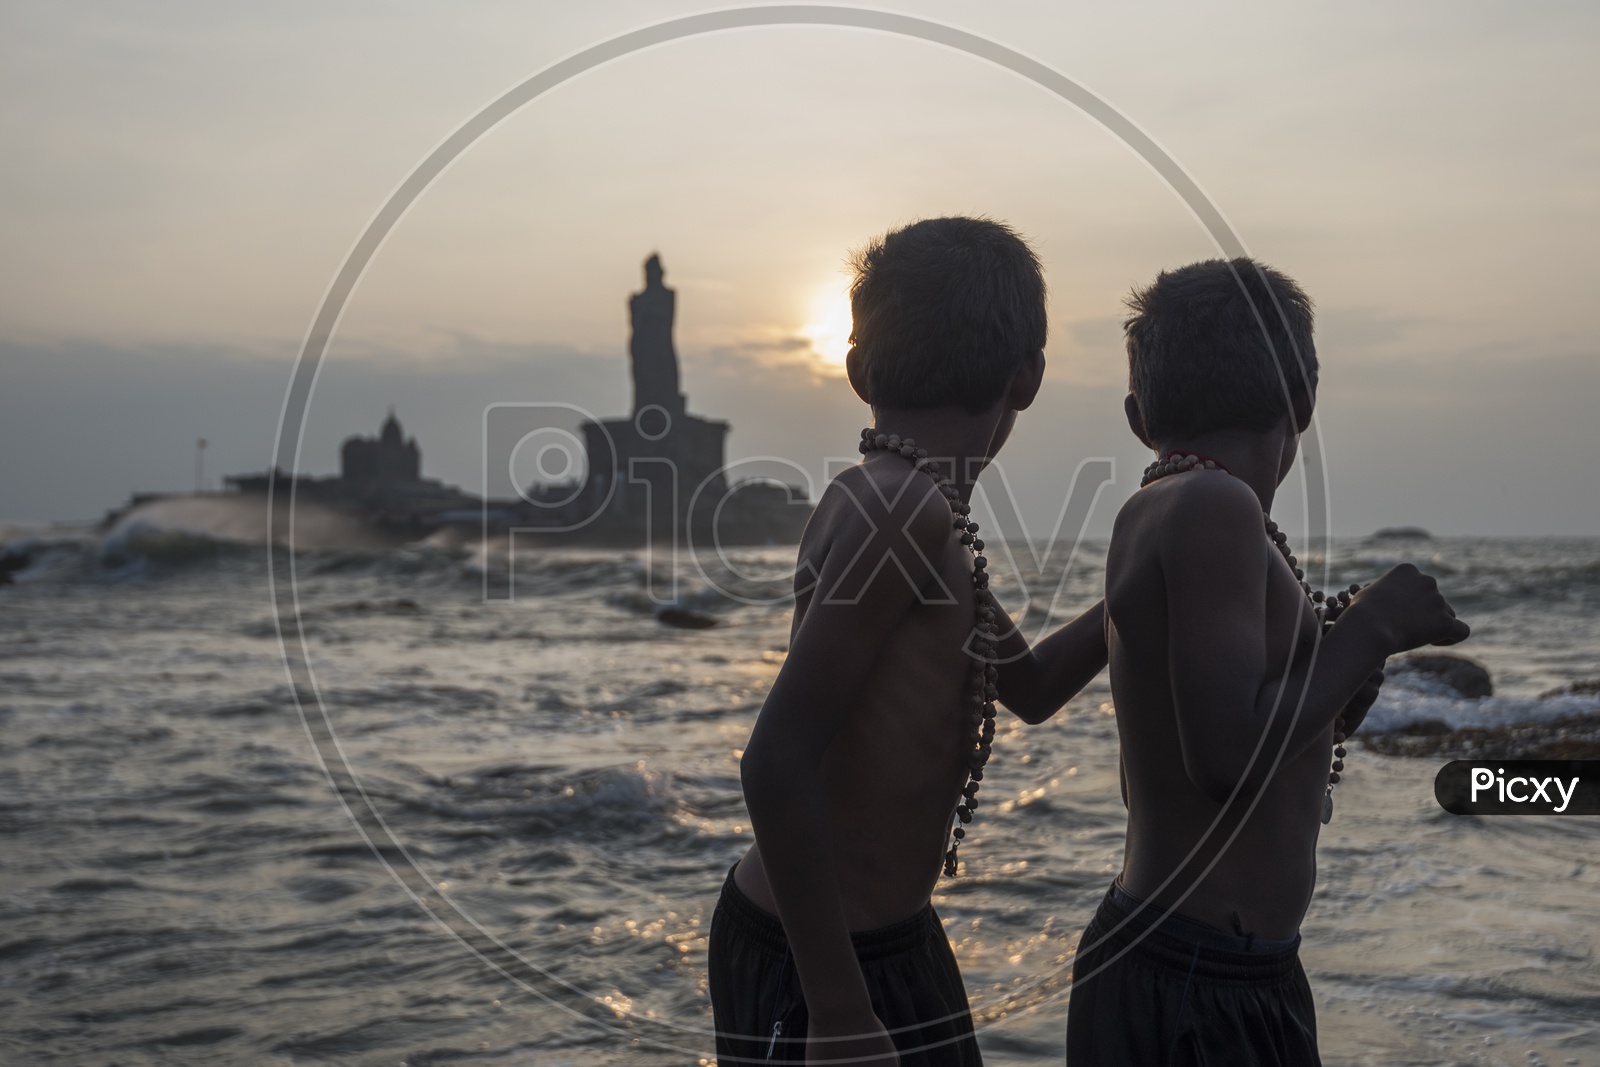 Two young boys in Sabarimala maala at the beach in Kanyakumari